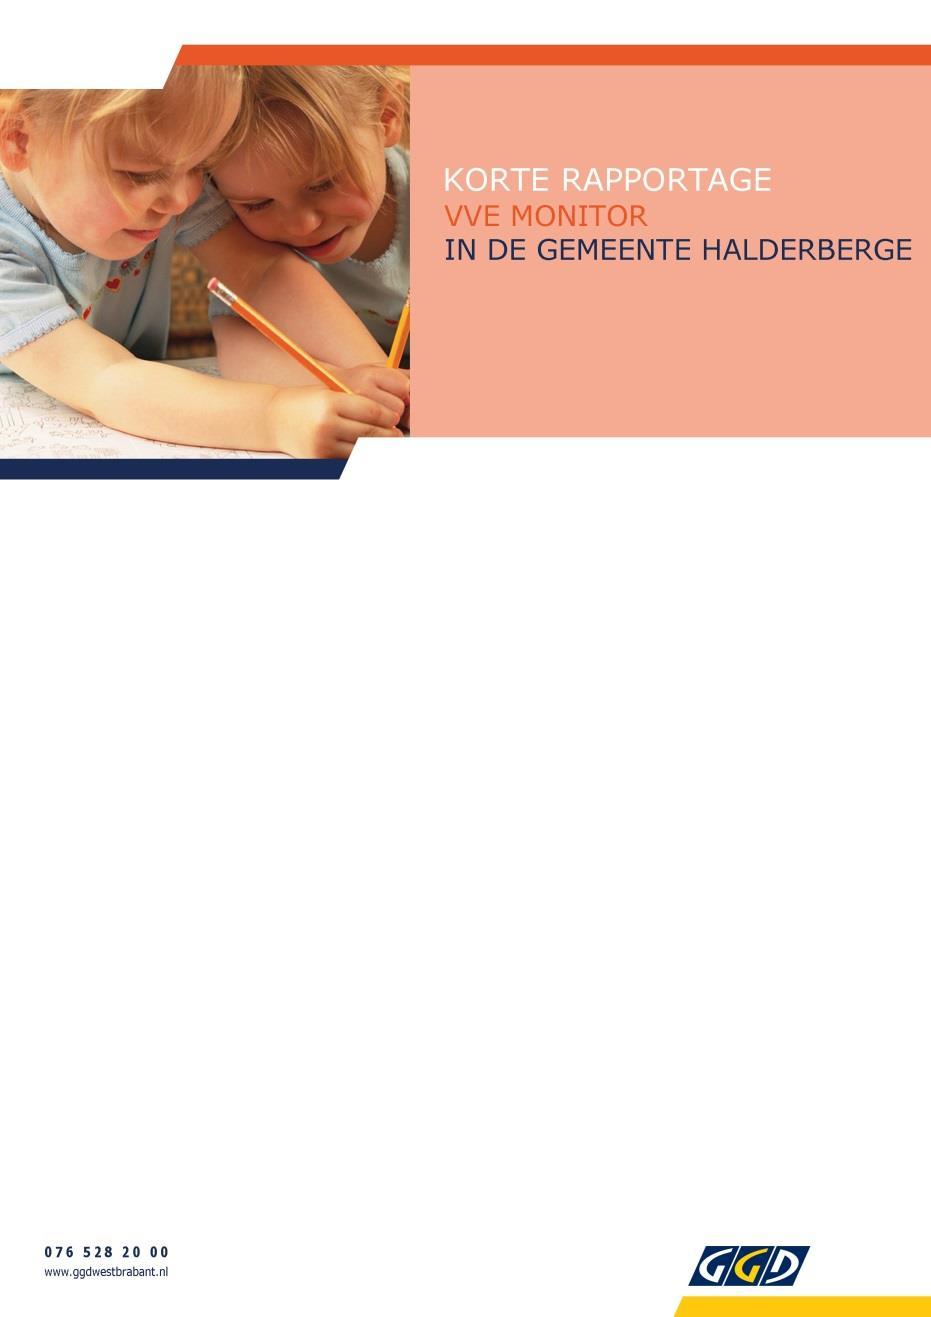 De gemeente Halderberge heeft tot taak het maken van proces- en resultaatafspraken bij Voor- en Vroegschoolse Educatie (VVE).